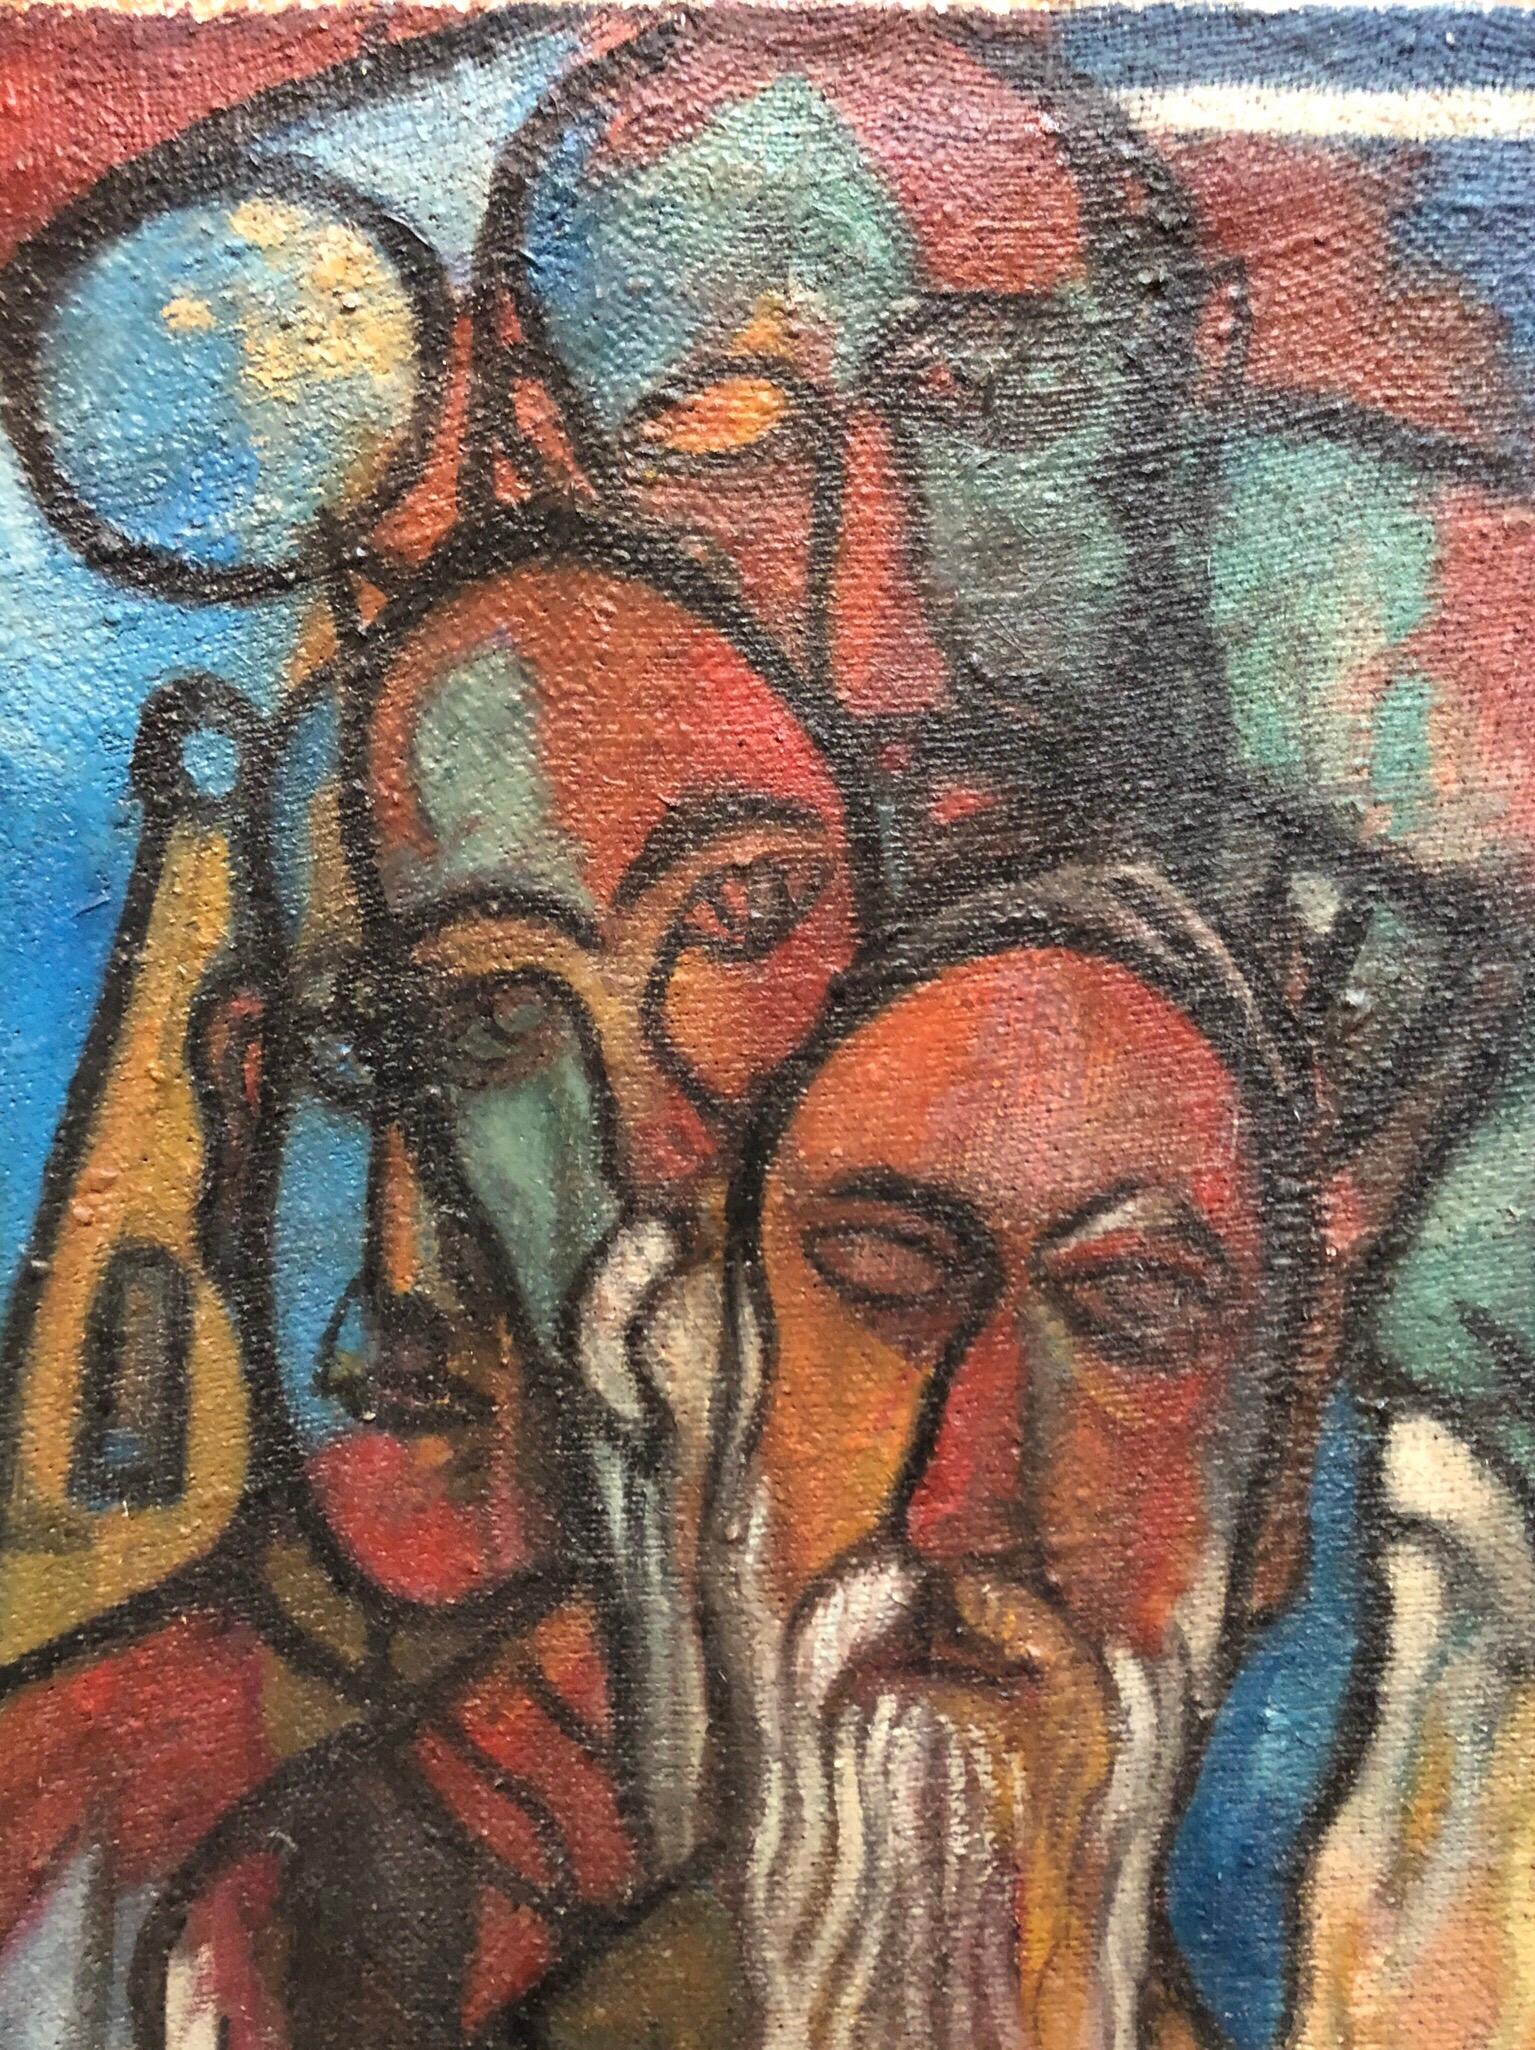 Il s'agit d'une peinture judaïque moderniste représentant une scène juive de la prière du Kiddush Levanah.  La bénédiction hébraïque mensuelle de la nouvelle lune. Il n'est pas daté mais j'estime qu'il date des années 1940.
Il est signé Maurice I+I,